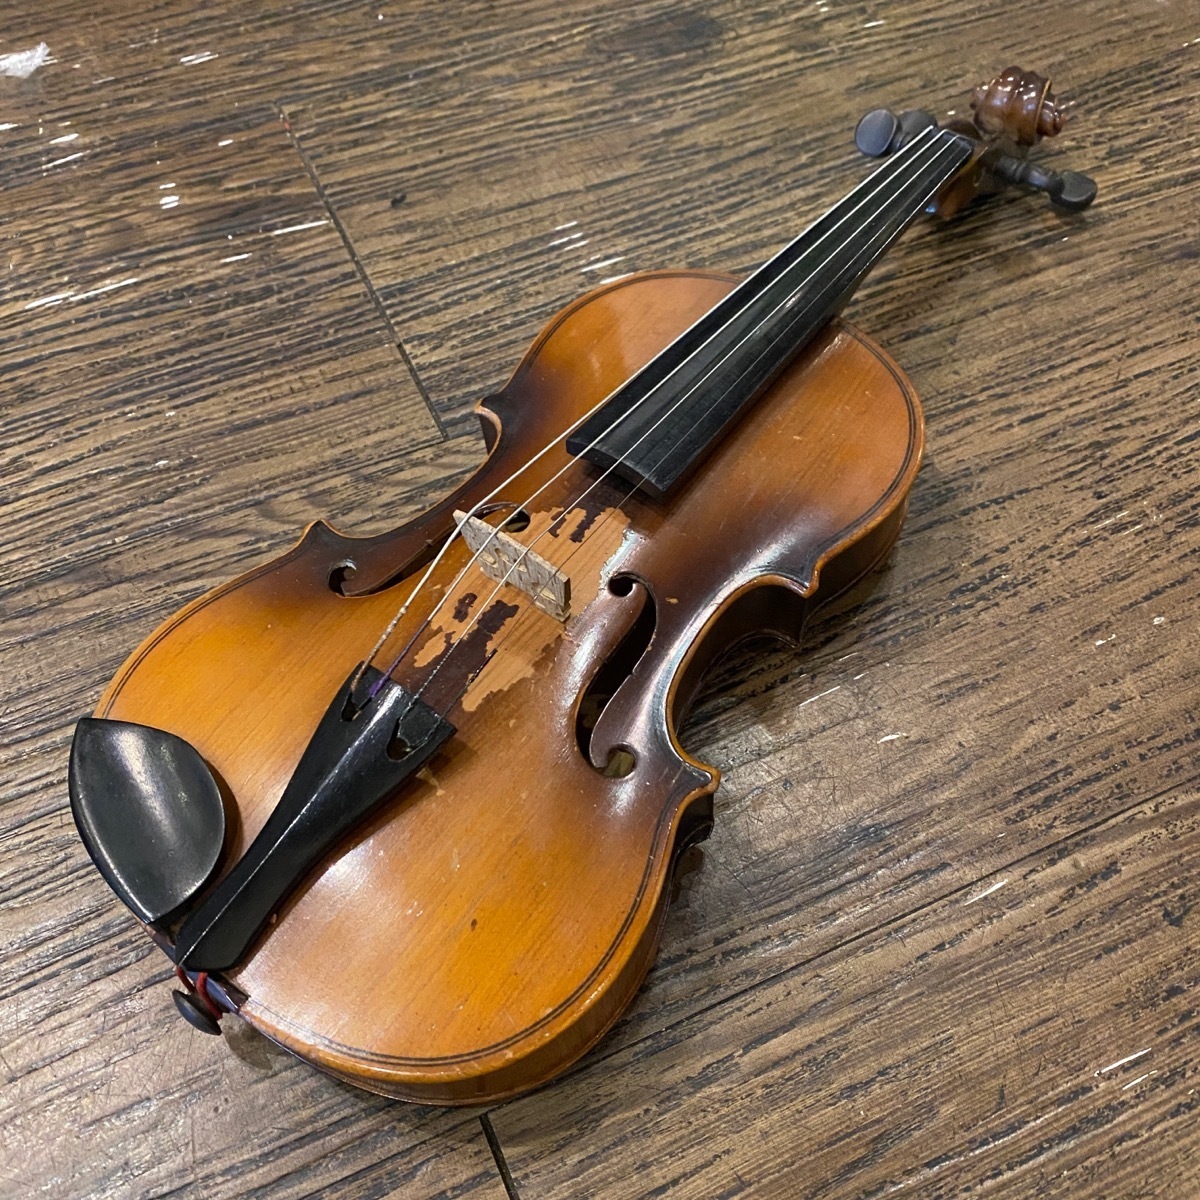 ミズノバイオリン No.110 1/10 String Instrument 水野楽器製作所 バイオリン -GrunSound-x137-